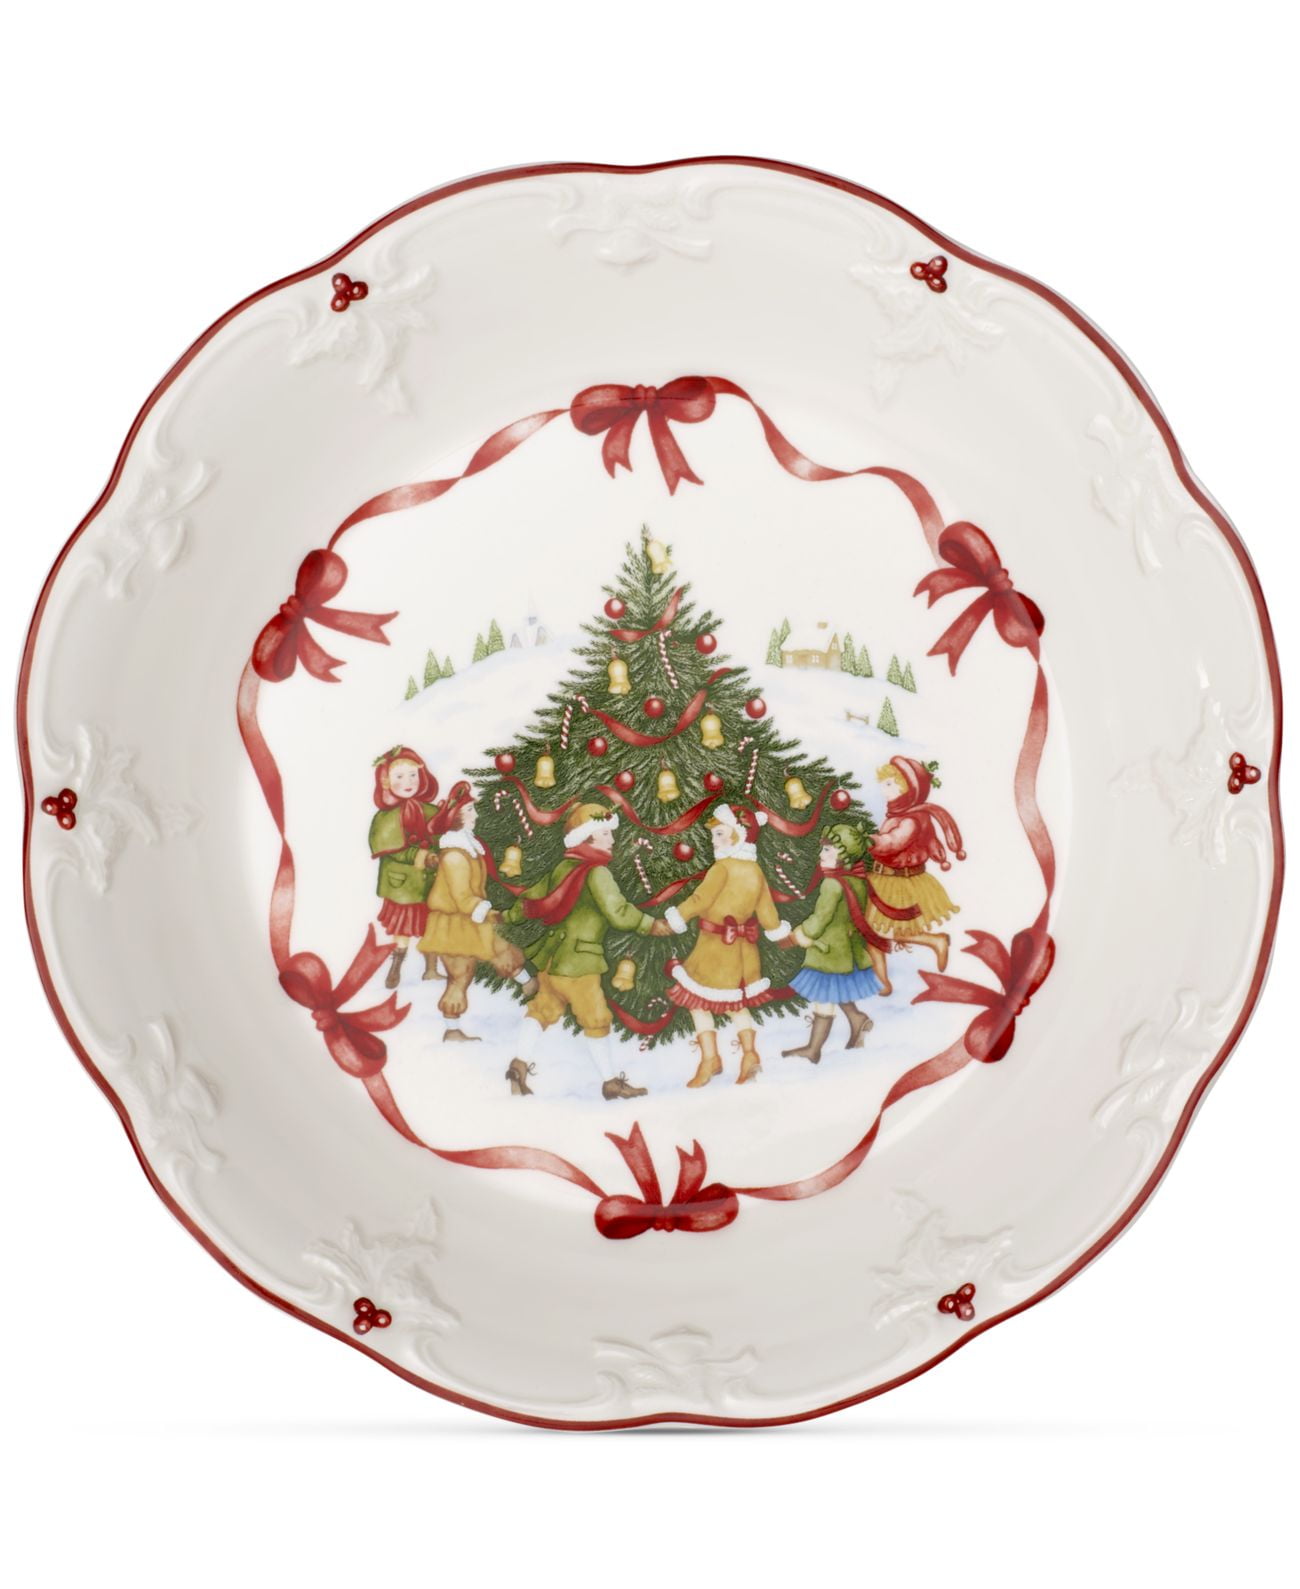 Motivo árbol de Navidad 27.0x23.5x5.0 cm Multicolor Porcelana 25 cm Villeroy & Boch 14-8332-3646 Escudilla Grande Toys Fantasy 